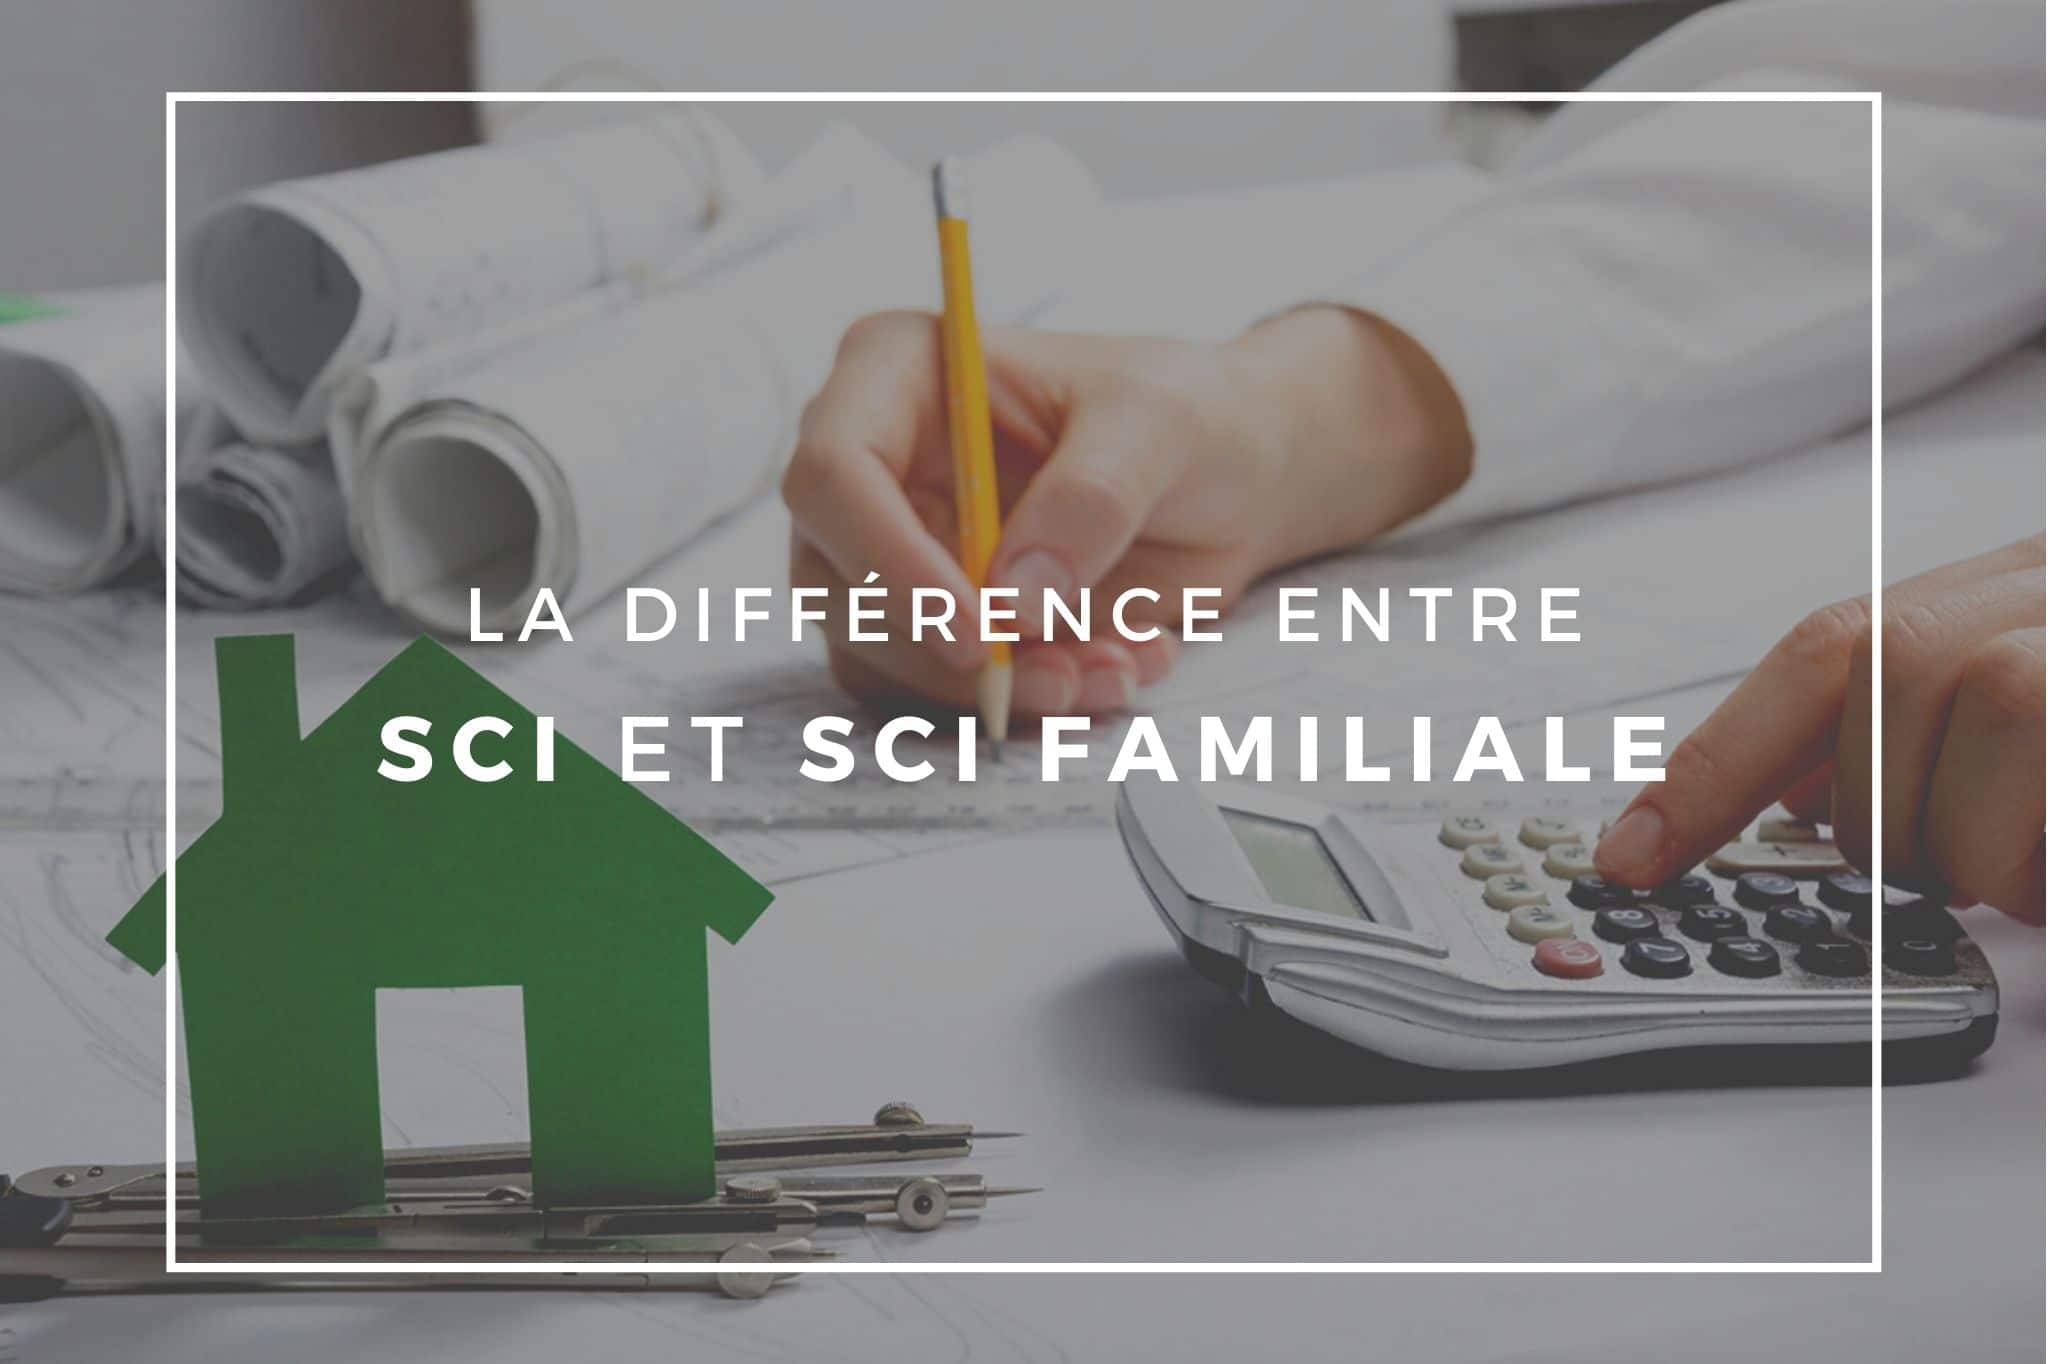 La différence entre SCI et SCI familiale